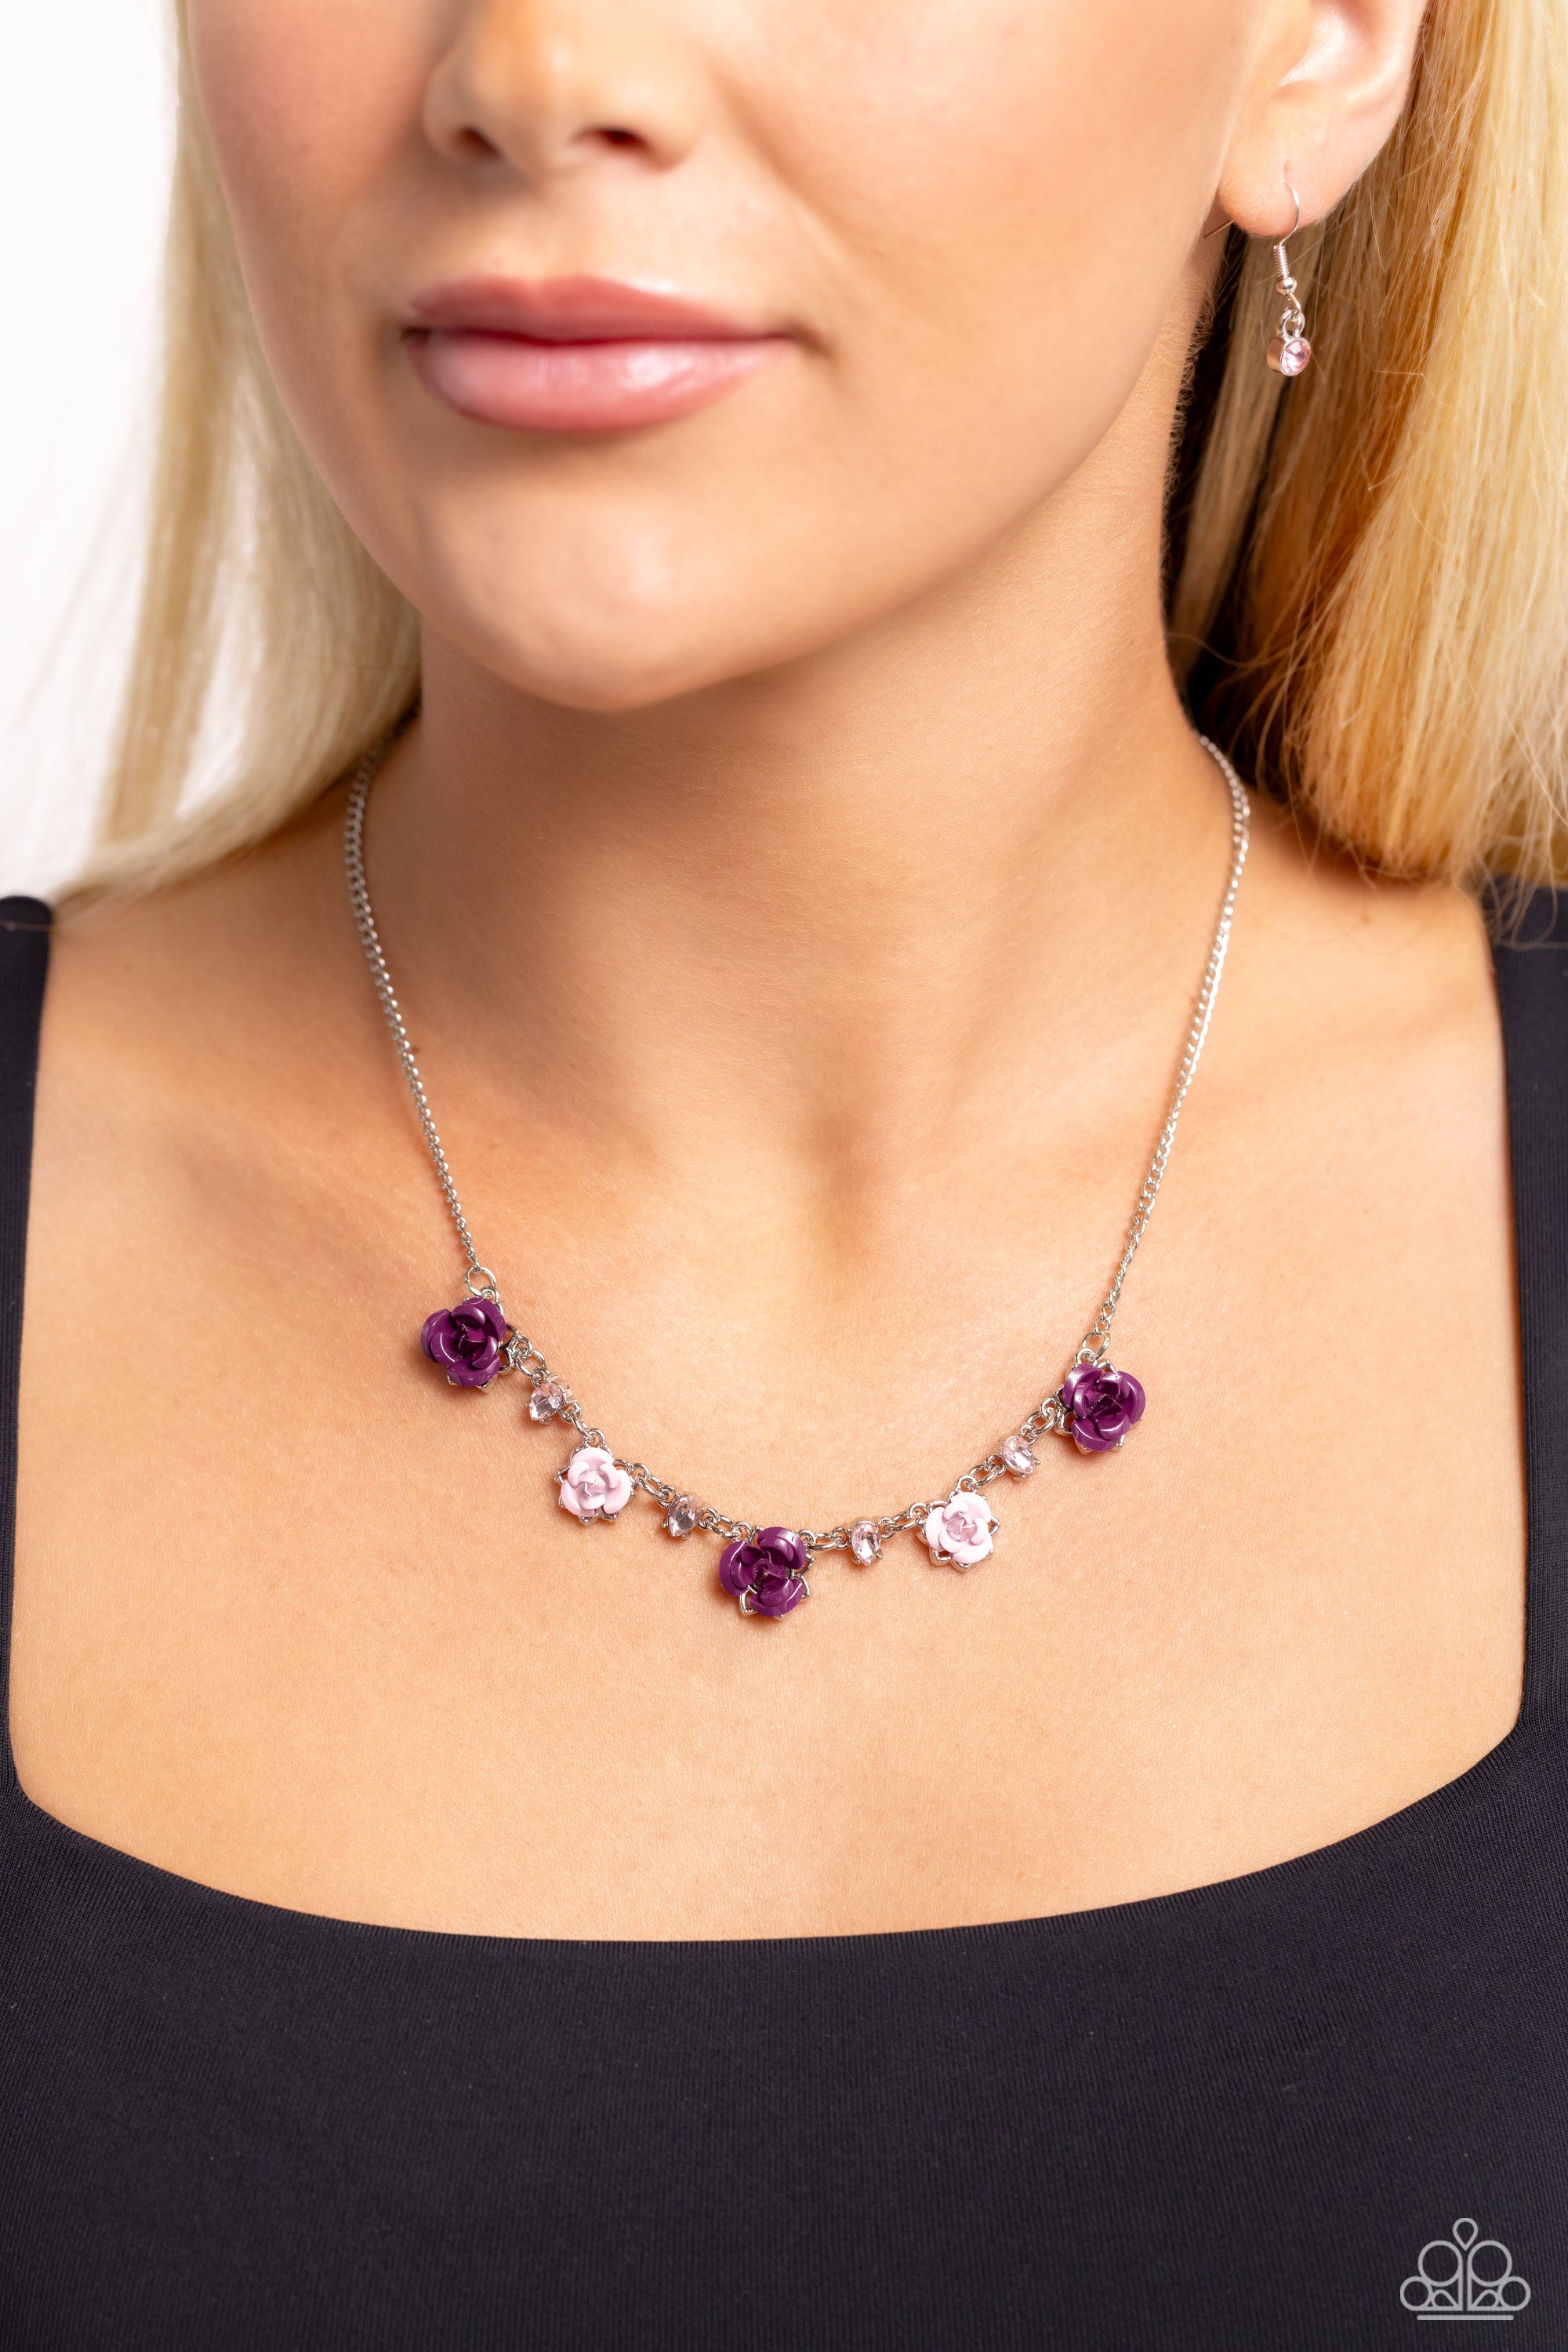 Jayden Double Flowers Asymmetrical Necklace in Purple Rose and Purple  Stones. FREE EARRINGS